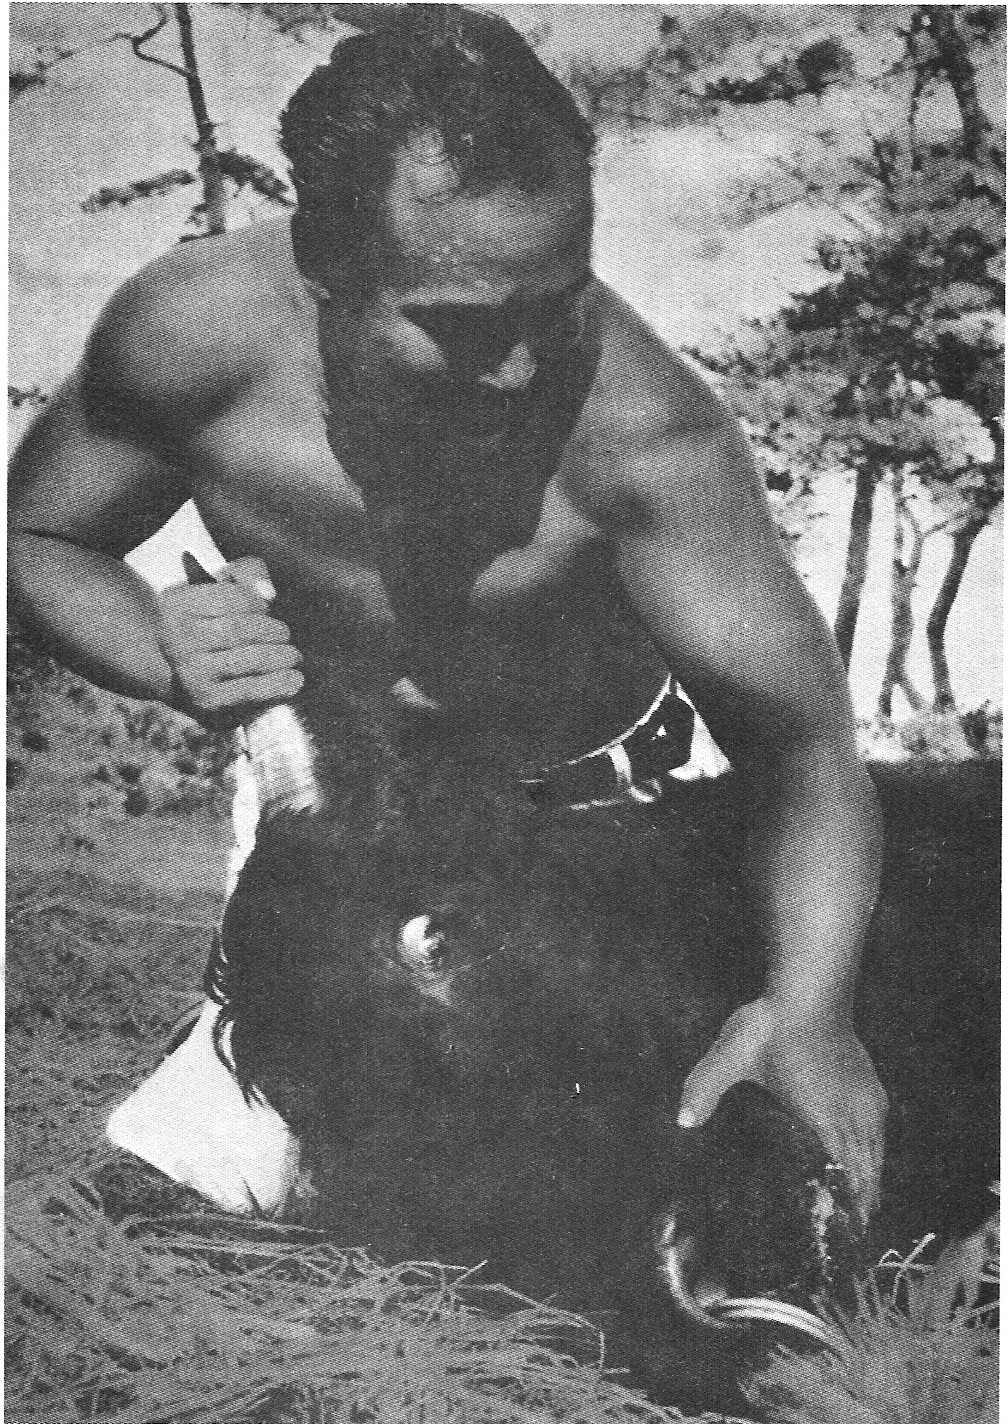 Sosai Oyama edzés gyanánt bikákkal küzdött. 